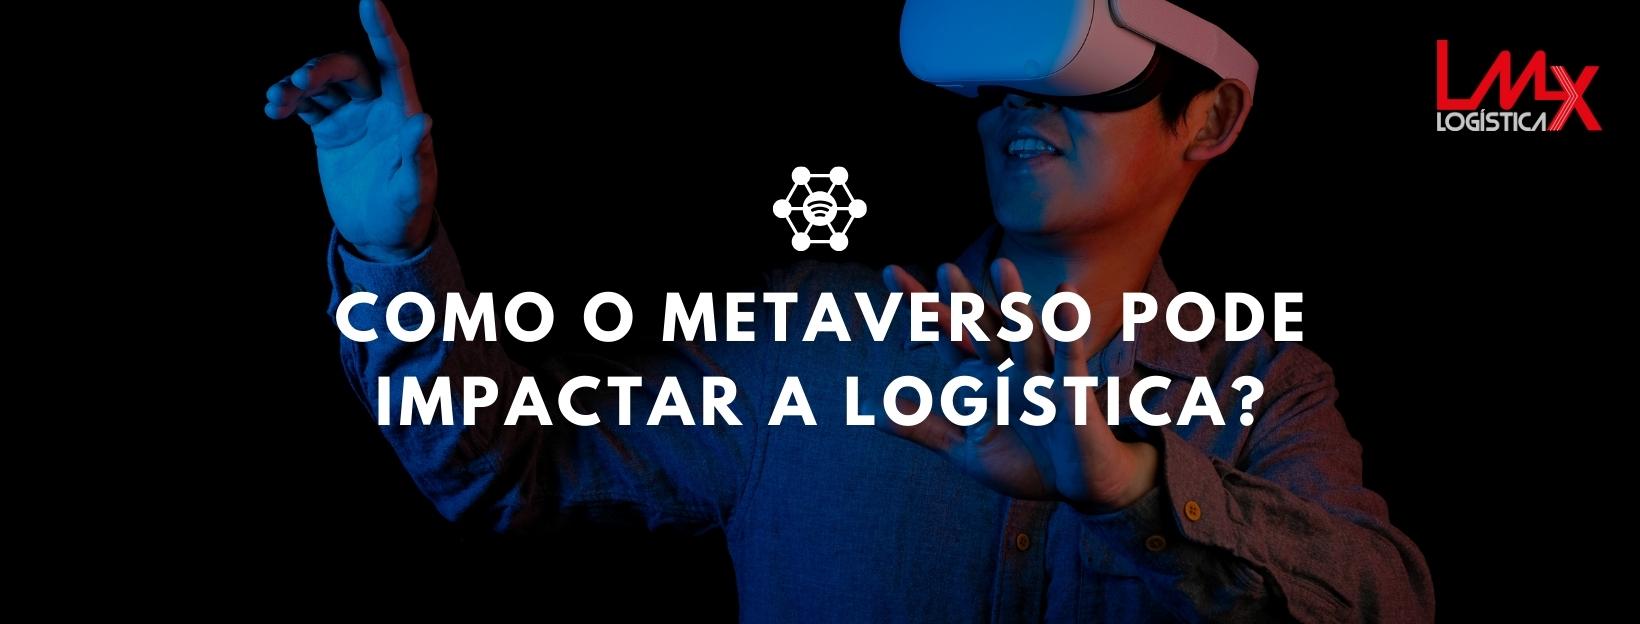 Metaverso: impacto na logística e indústria 